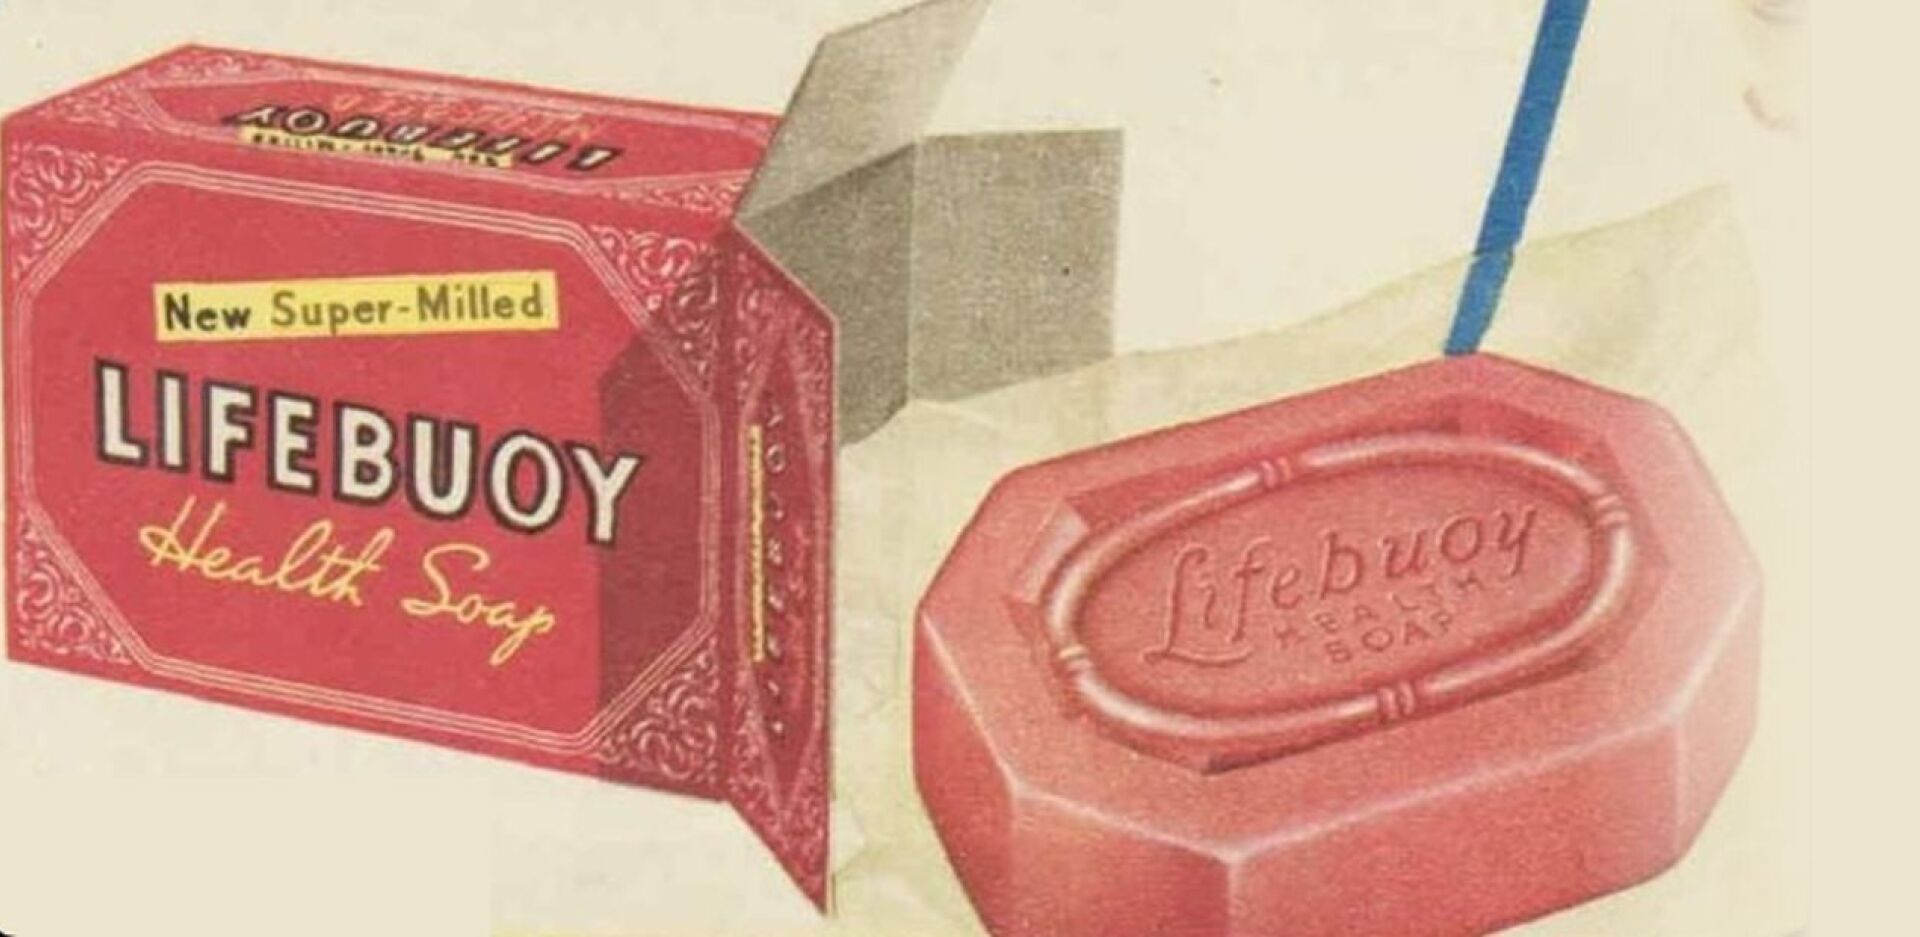 Το αντιβακτηριδιακό σαπούνι Lifebuoy